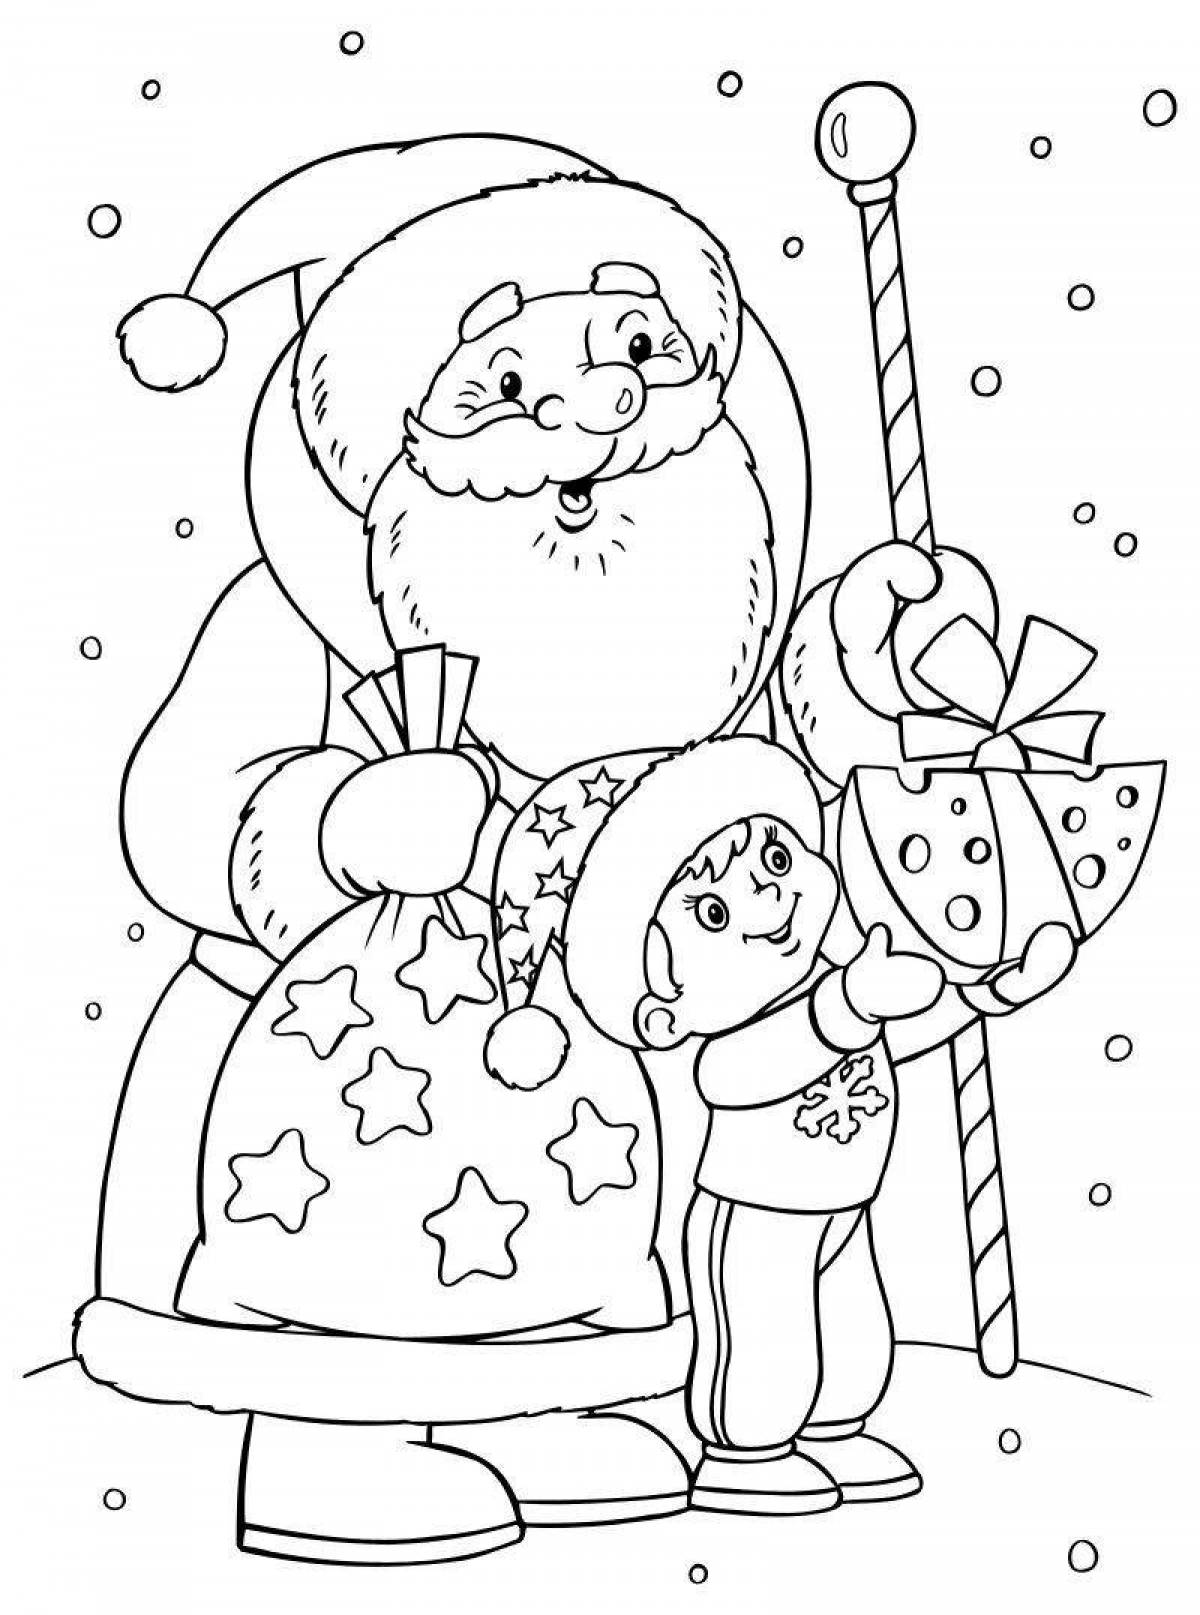 Изысканная рождественская раскраска деда мороза и снегурочки